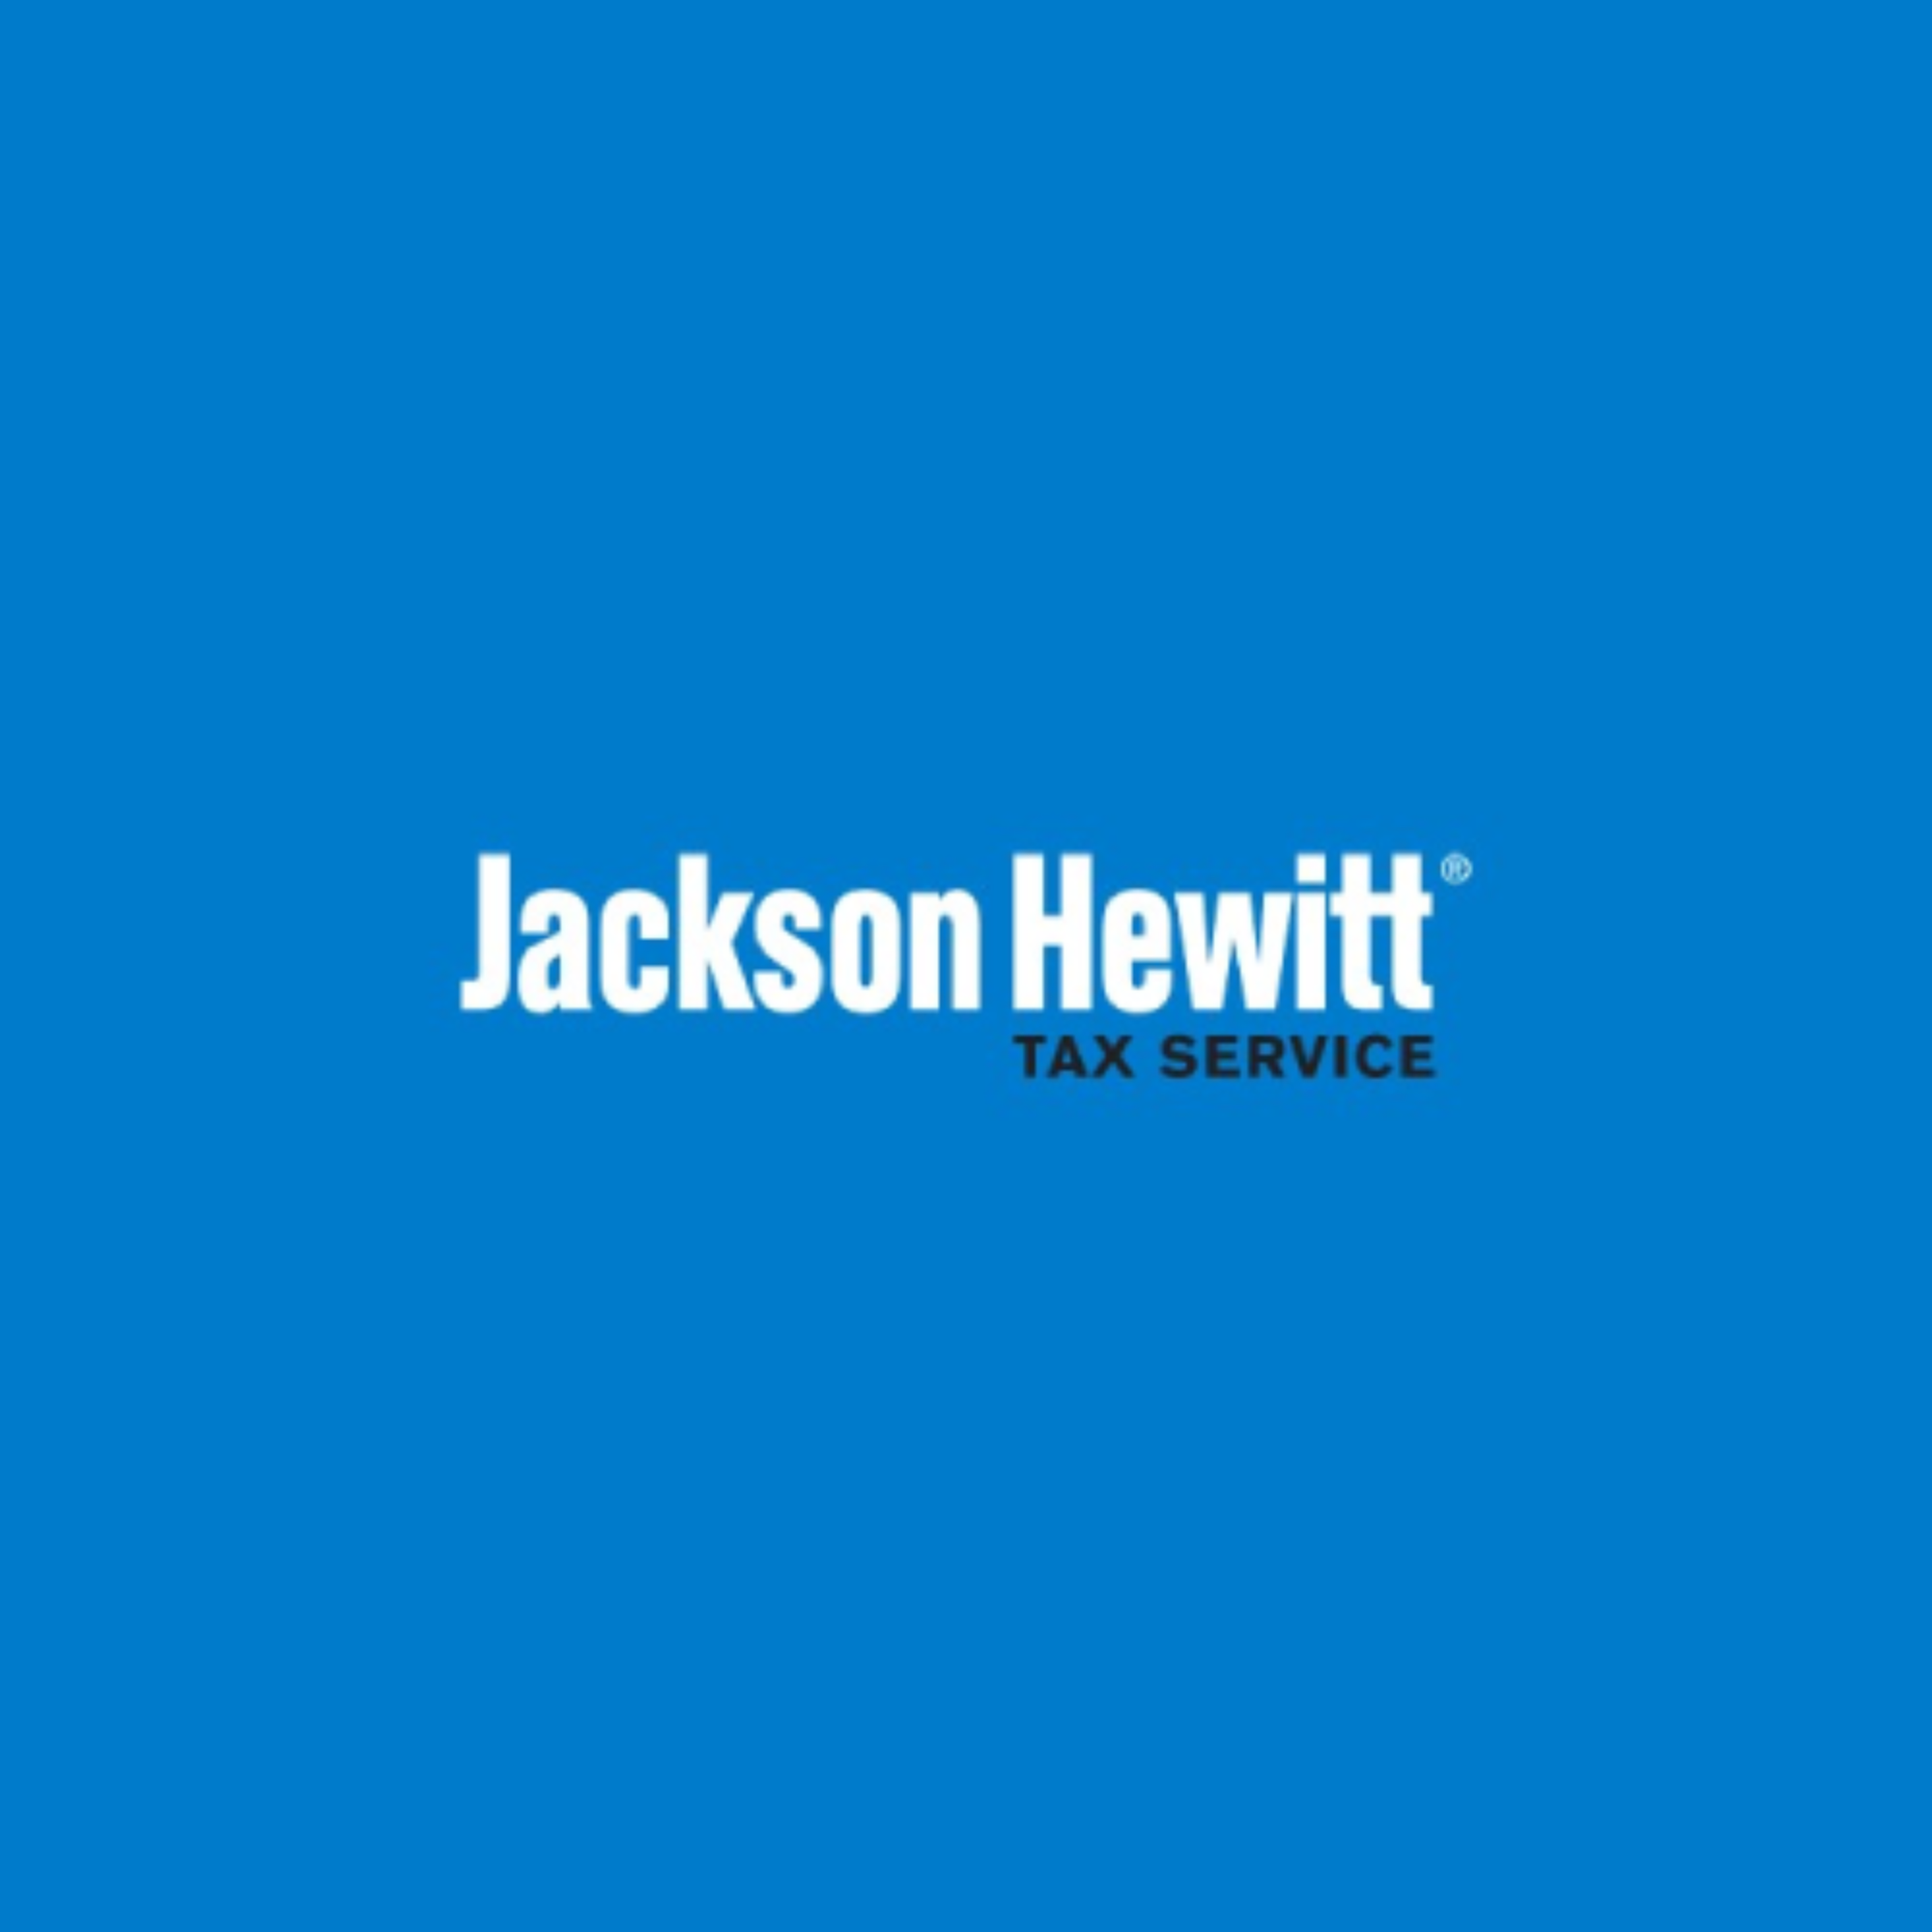 Jackson Hewitt Tax Service 222 S Crittenden St, Marshfield Missouri 65706